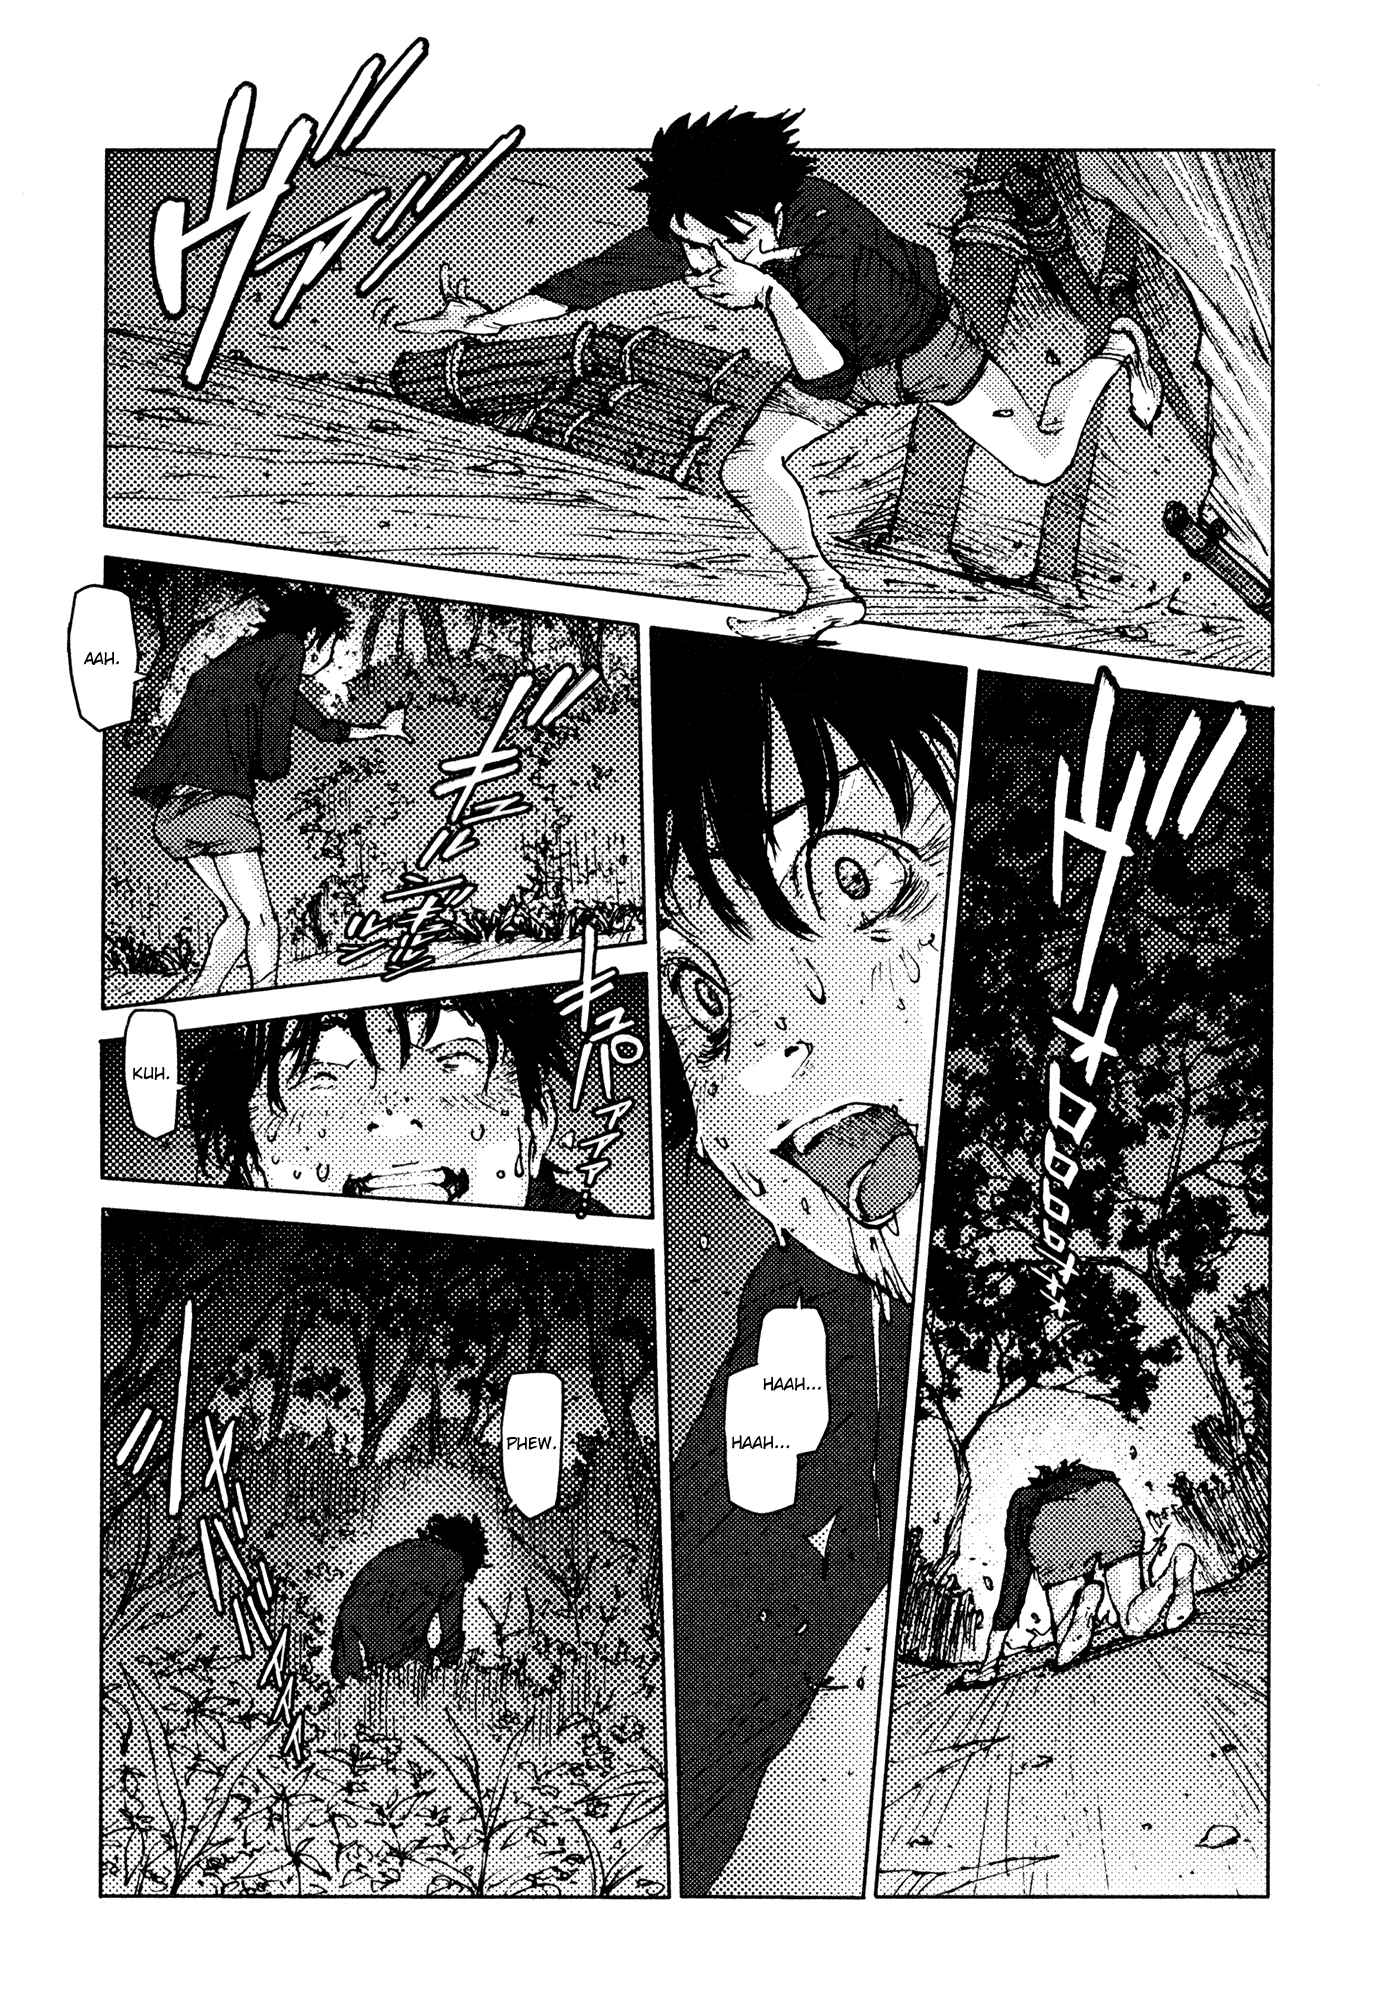 Survival: Shounen S no Kiroku Vol.1 Ch.12